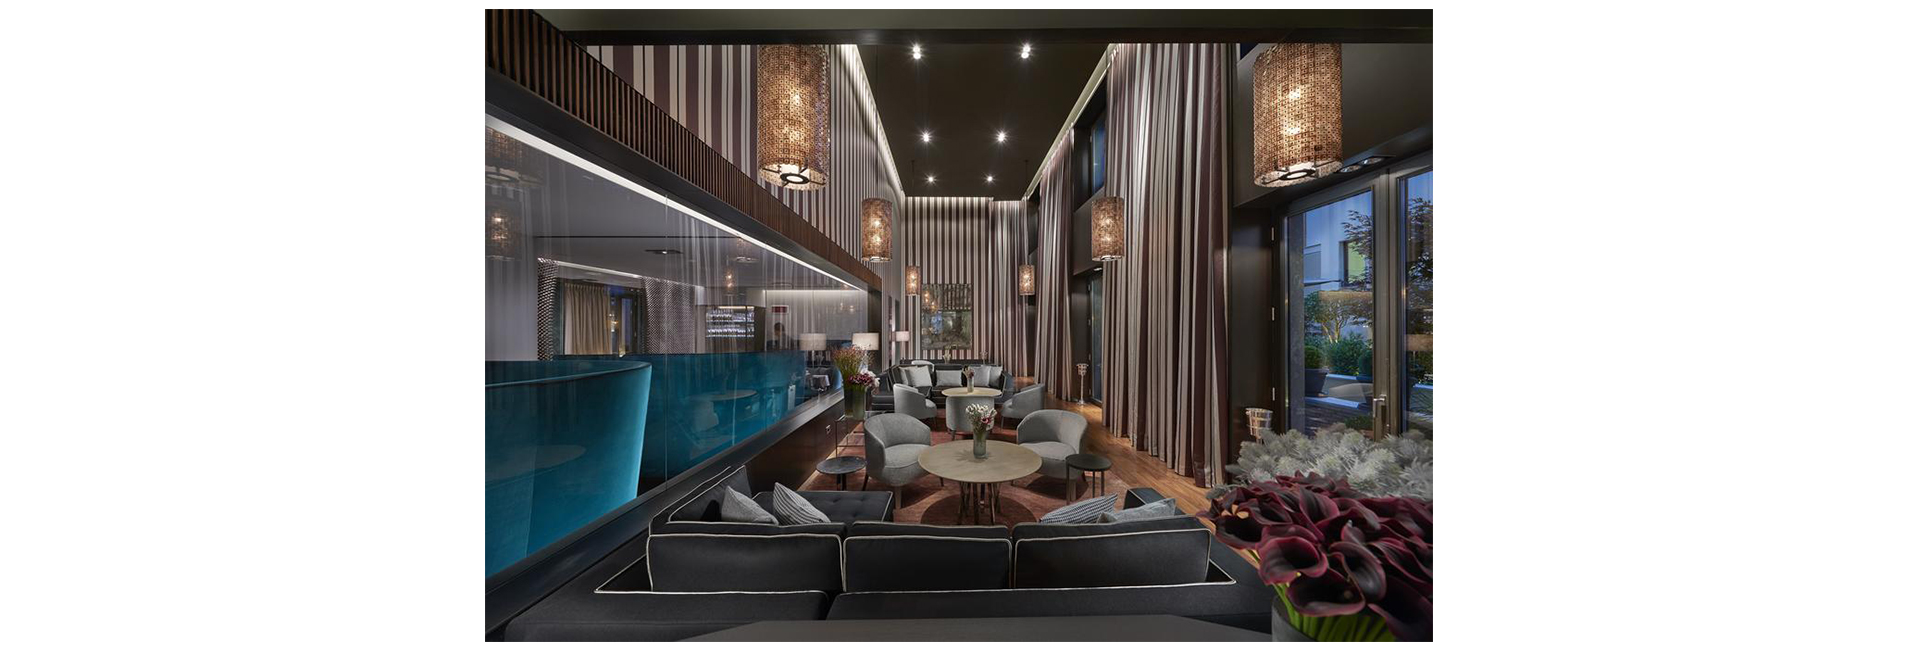 Отель Mandarin Oriental в Милане предлагает услугу подбора мебели для дома (фото 2)